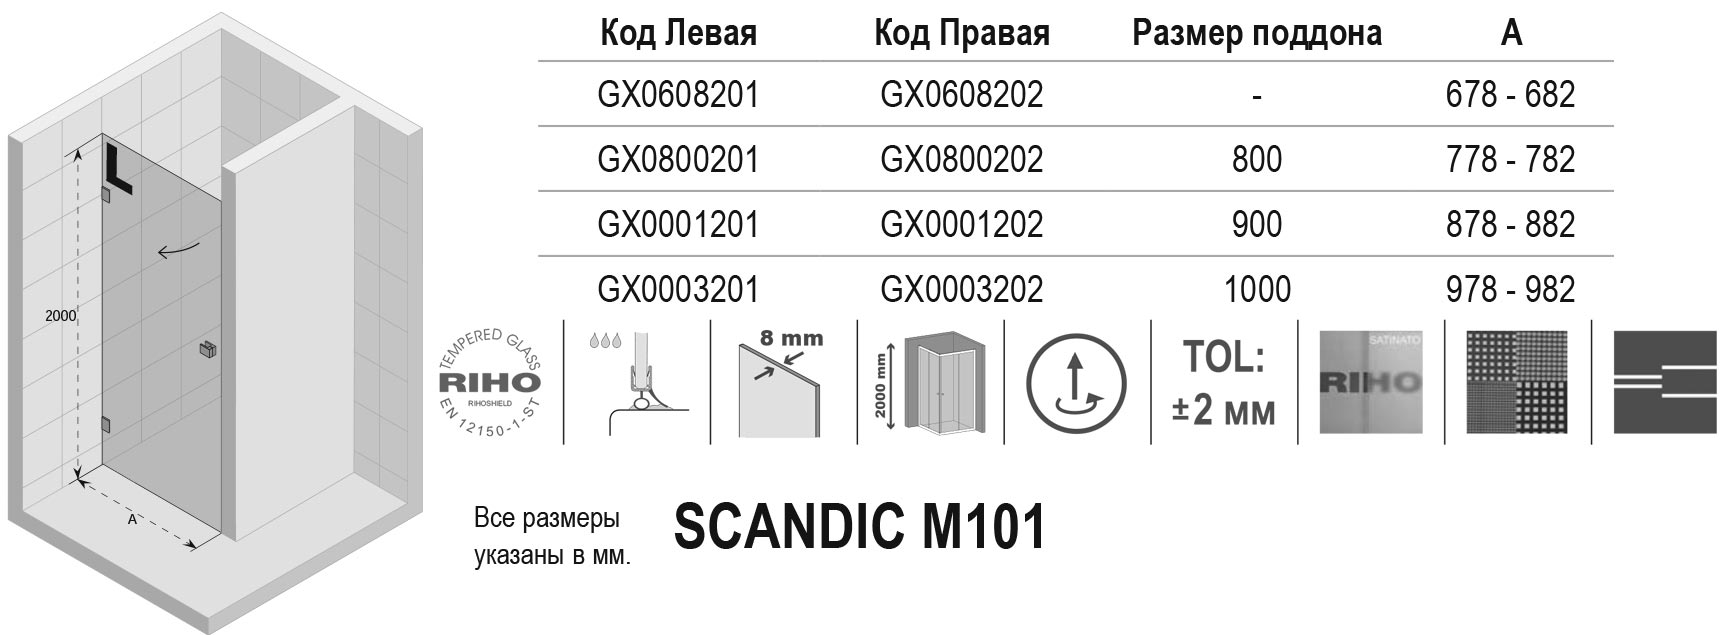 Чертёж Riho Scandic M101 GX0608202